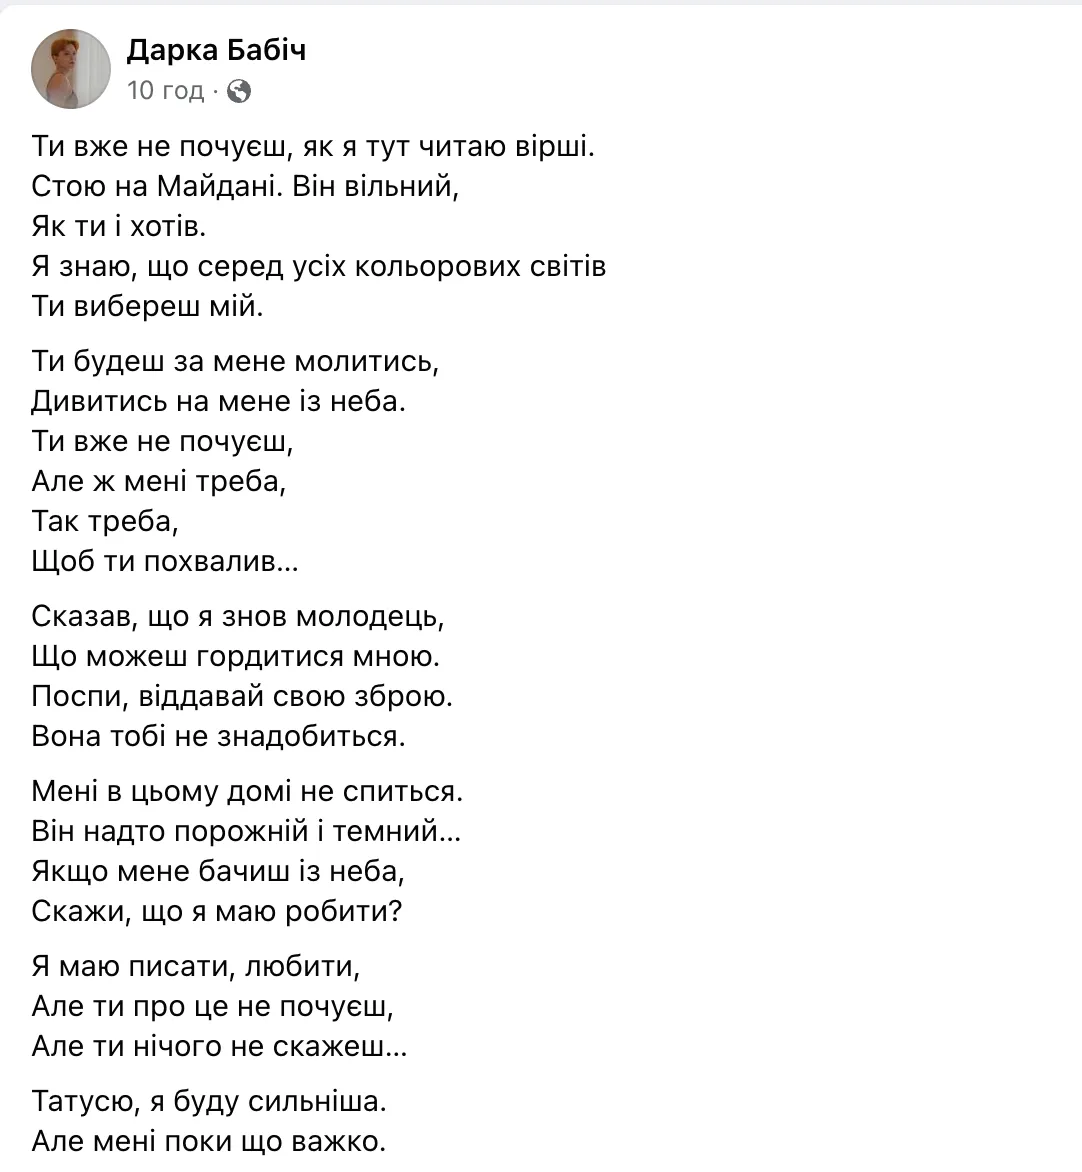 Дарка Бабич посвятила отцу стихотворение